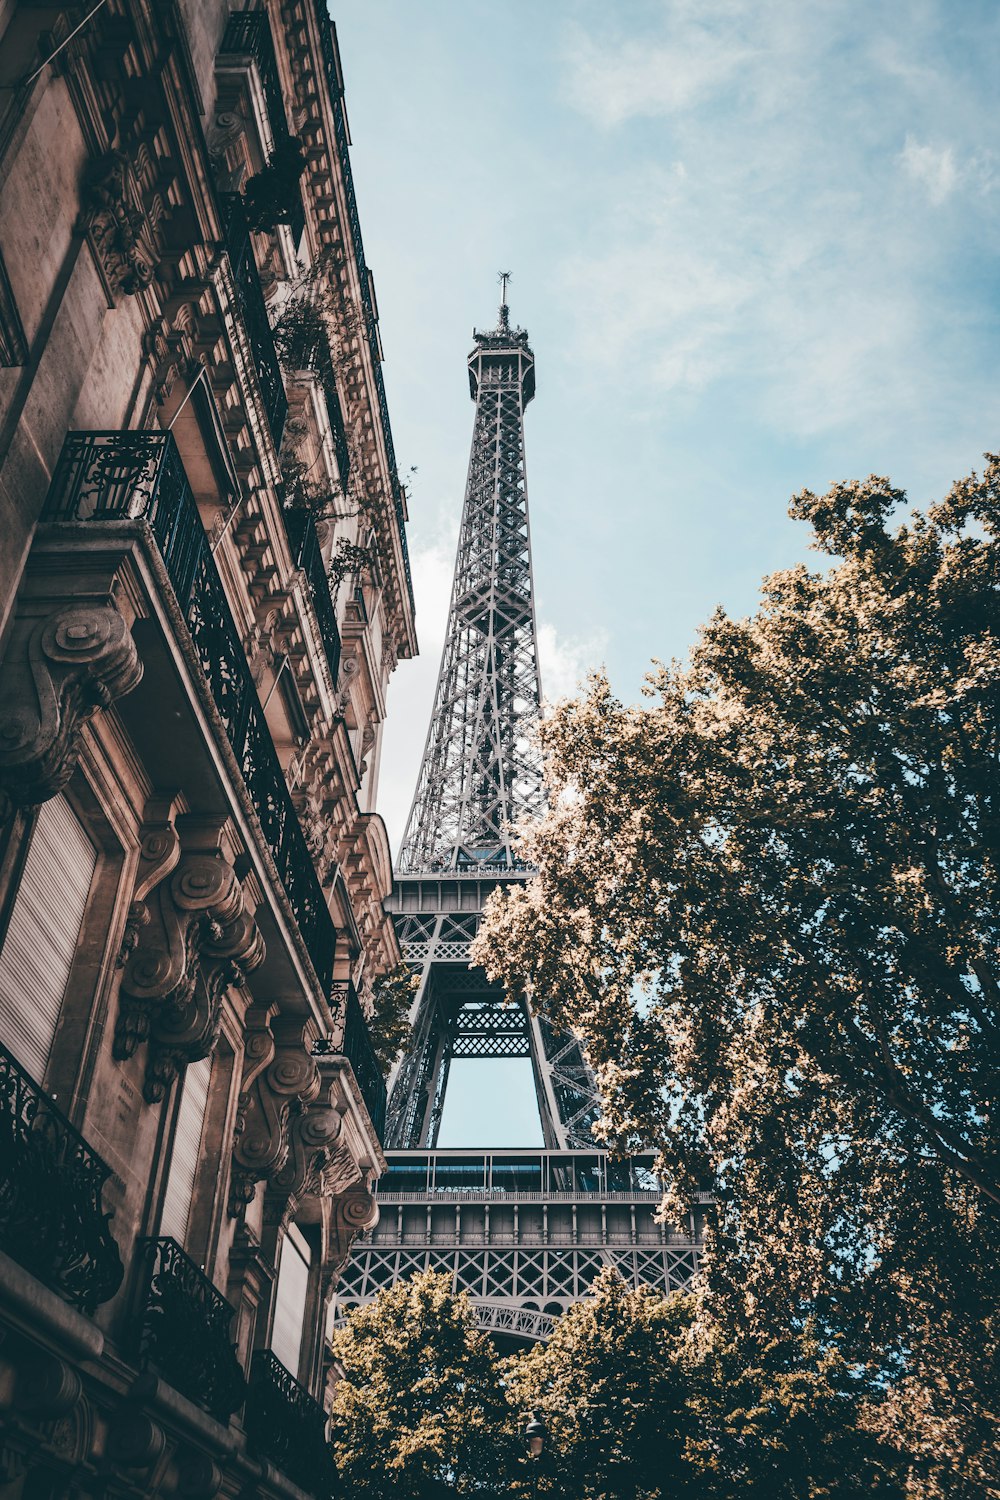 Tour Eiffel sous un ciel bleu